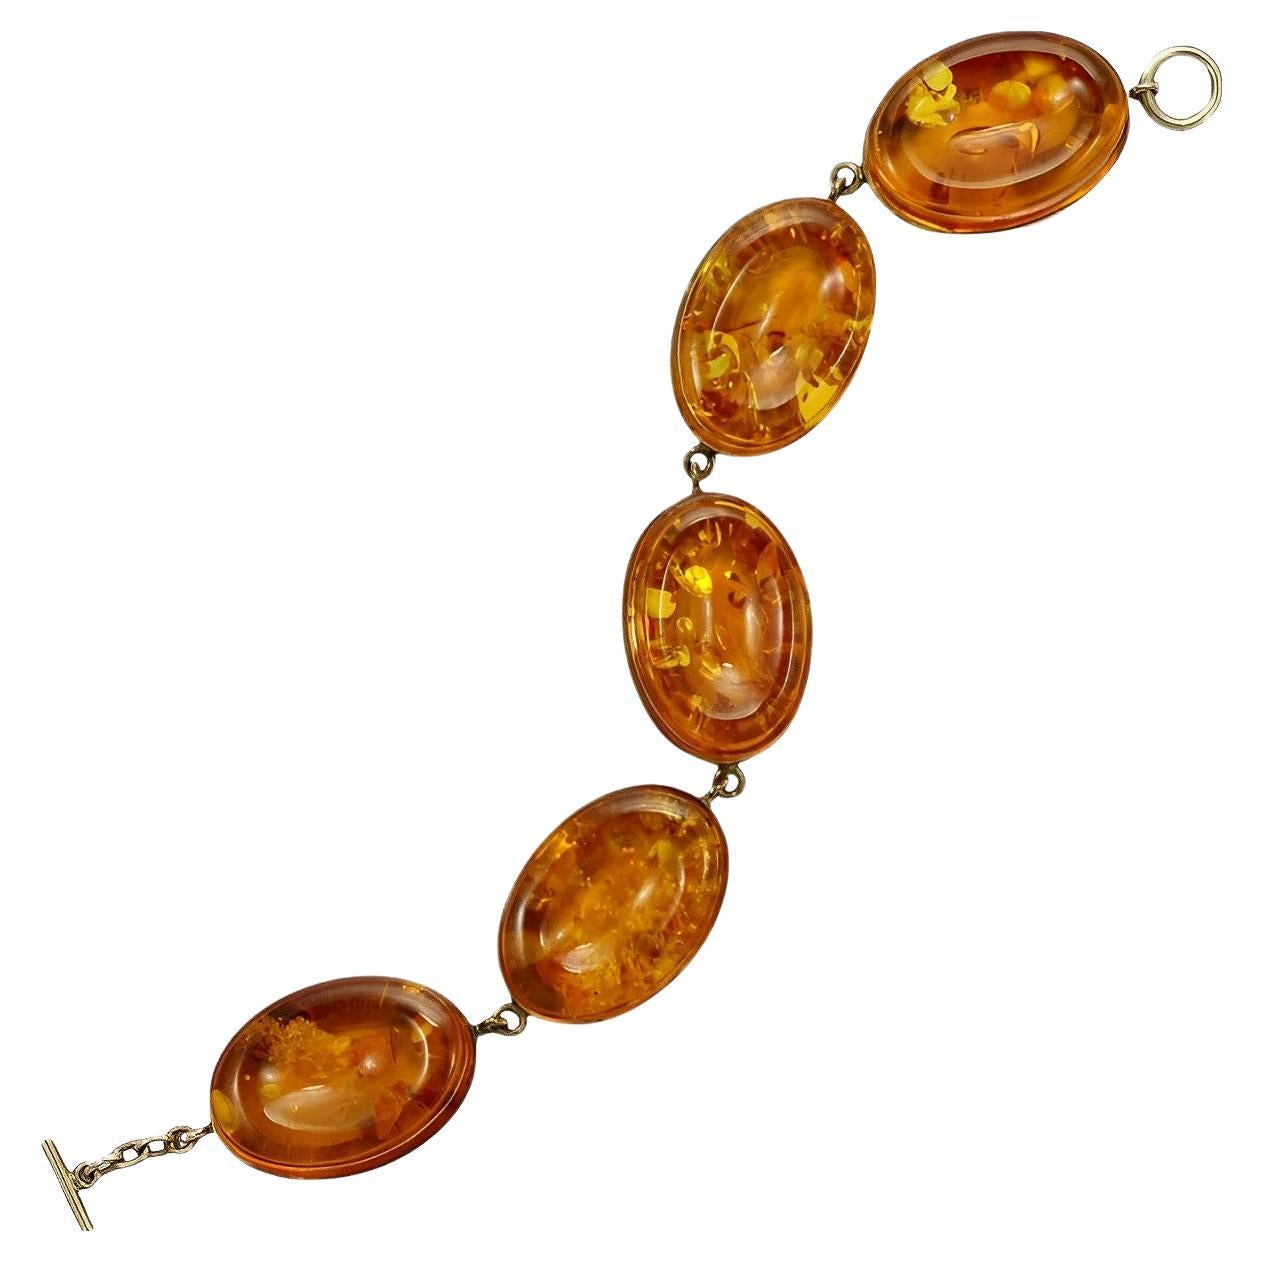 Oval Polished Amber Link Bracelet Set in Gold Vermeil on Sterling Silver Links For Sale